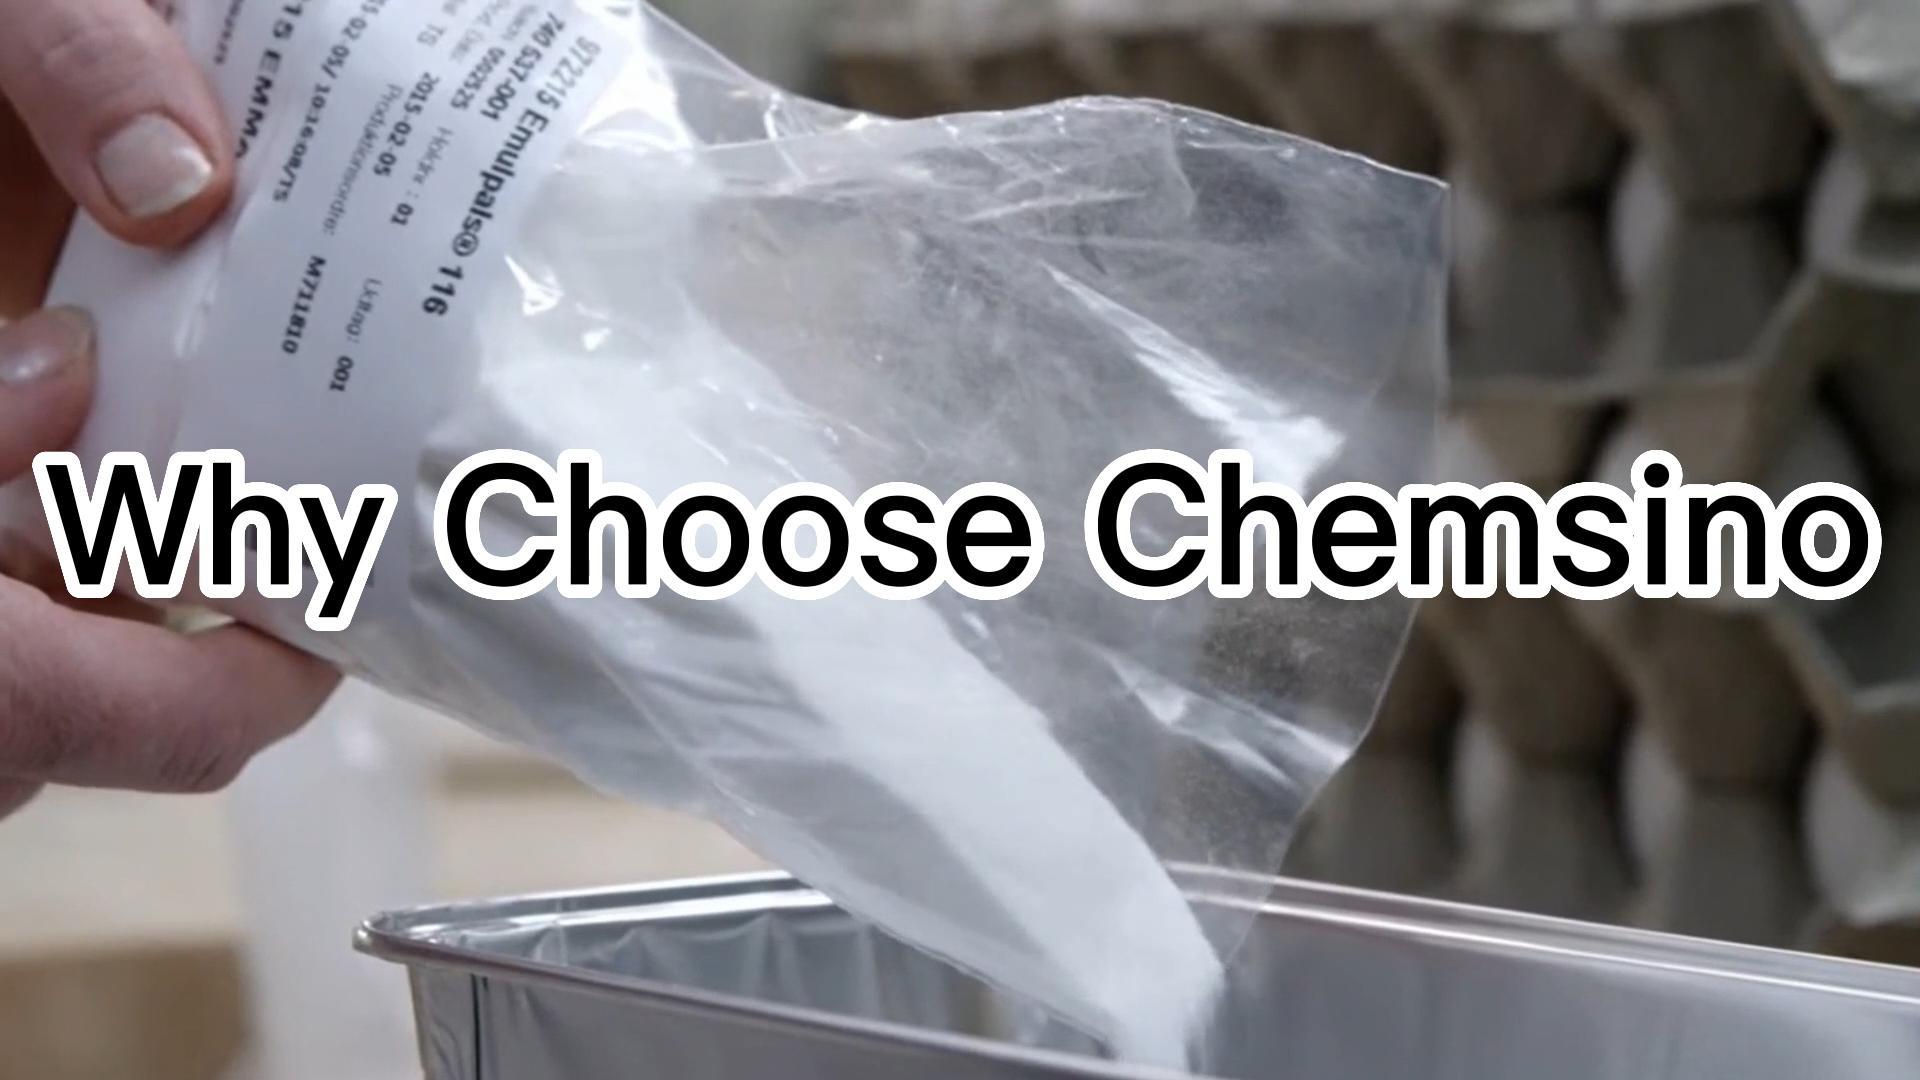 Why choose Chemsino?